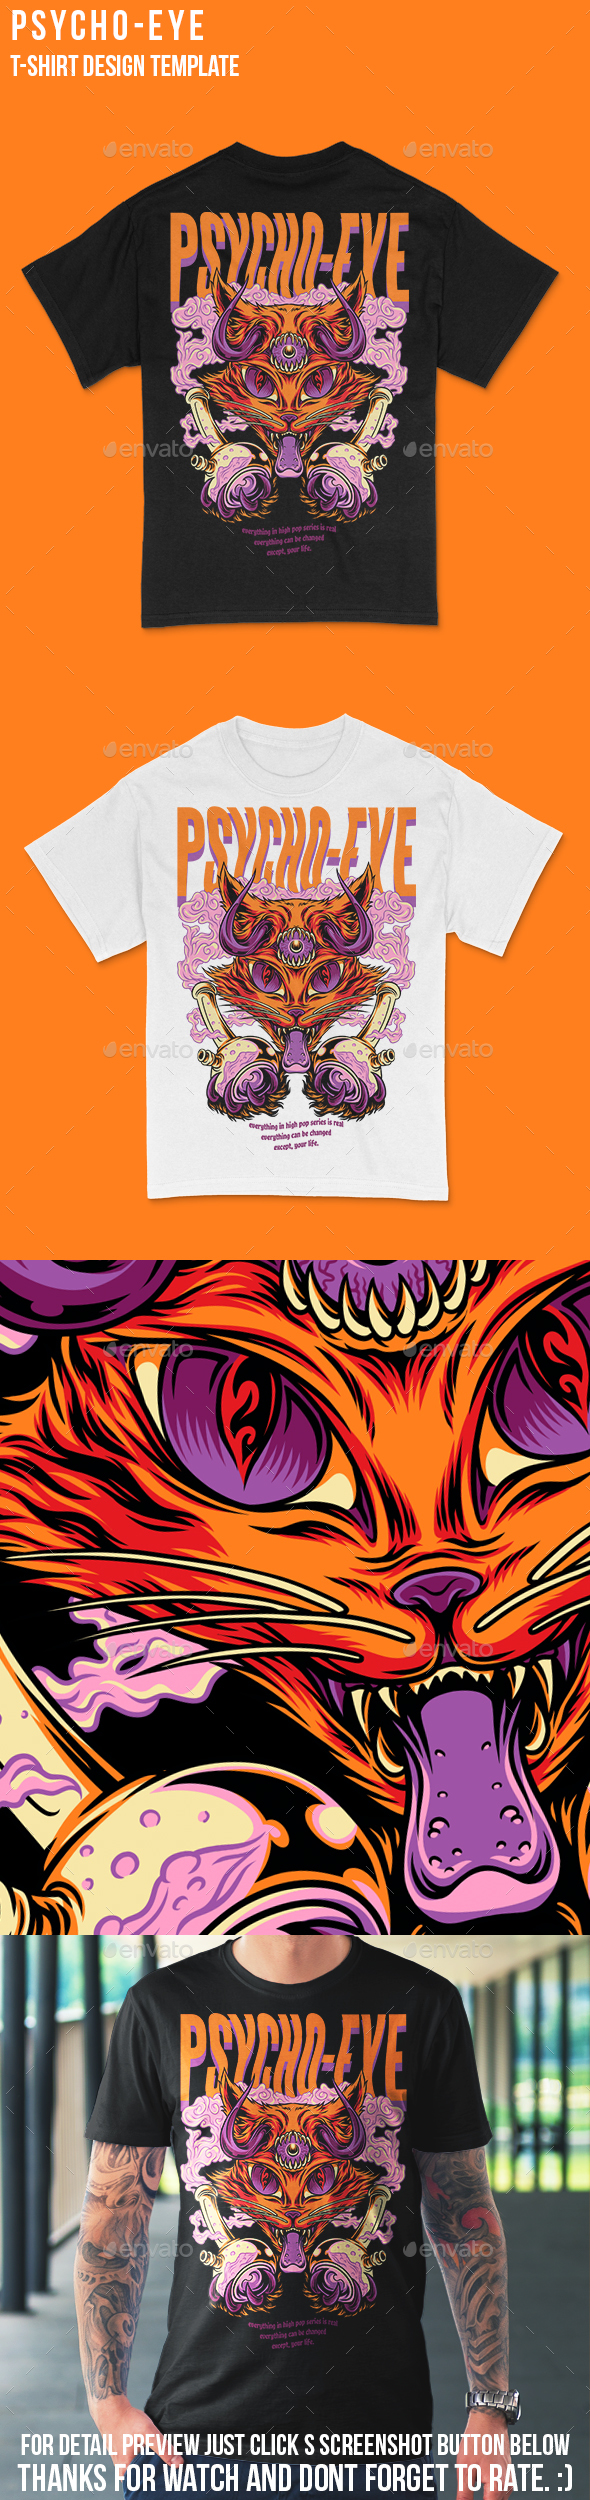 Psycho Eye T-Shirt Design Template